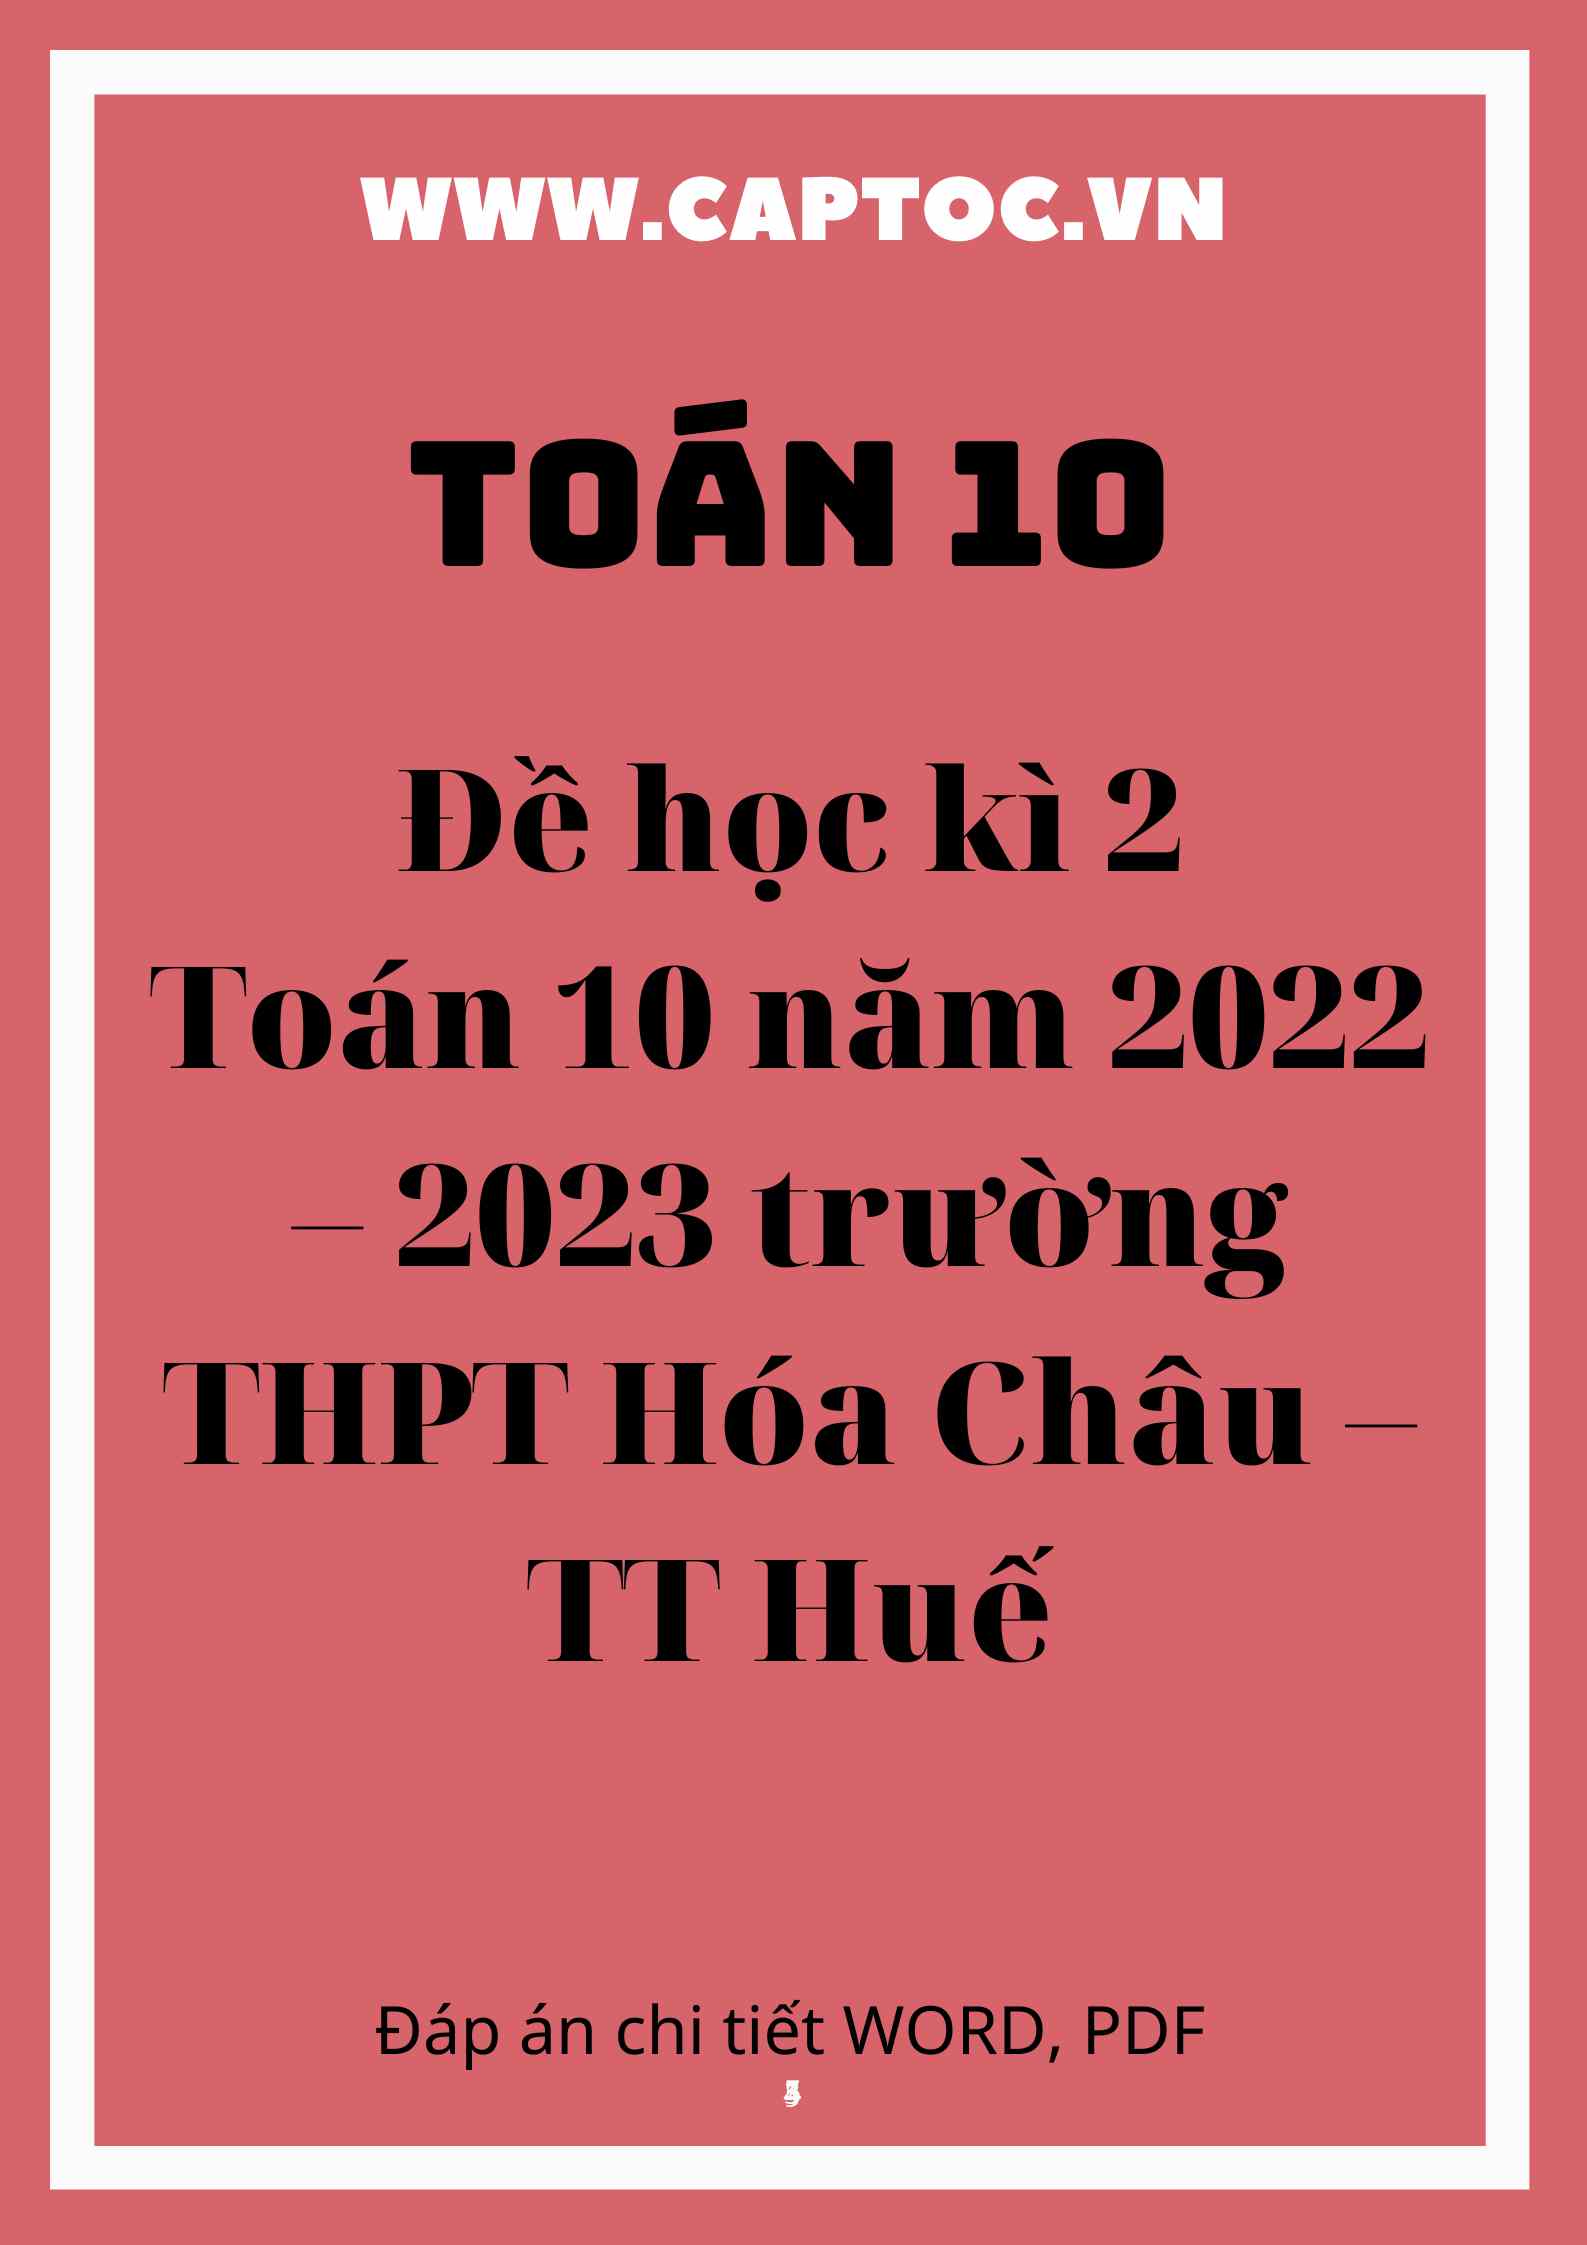 Đề học kì 2 Toán 10 năm 2022 – 2023 trường THPT Hóa Châu – TT Huế